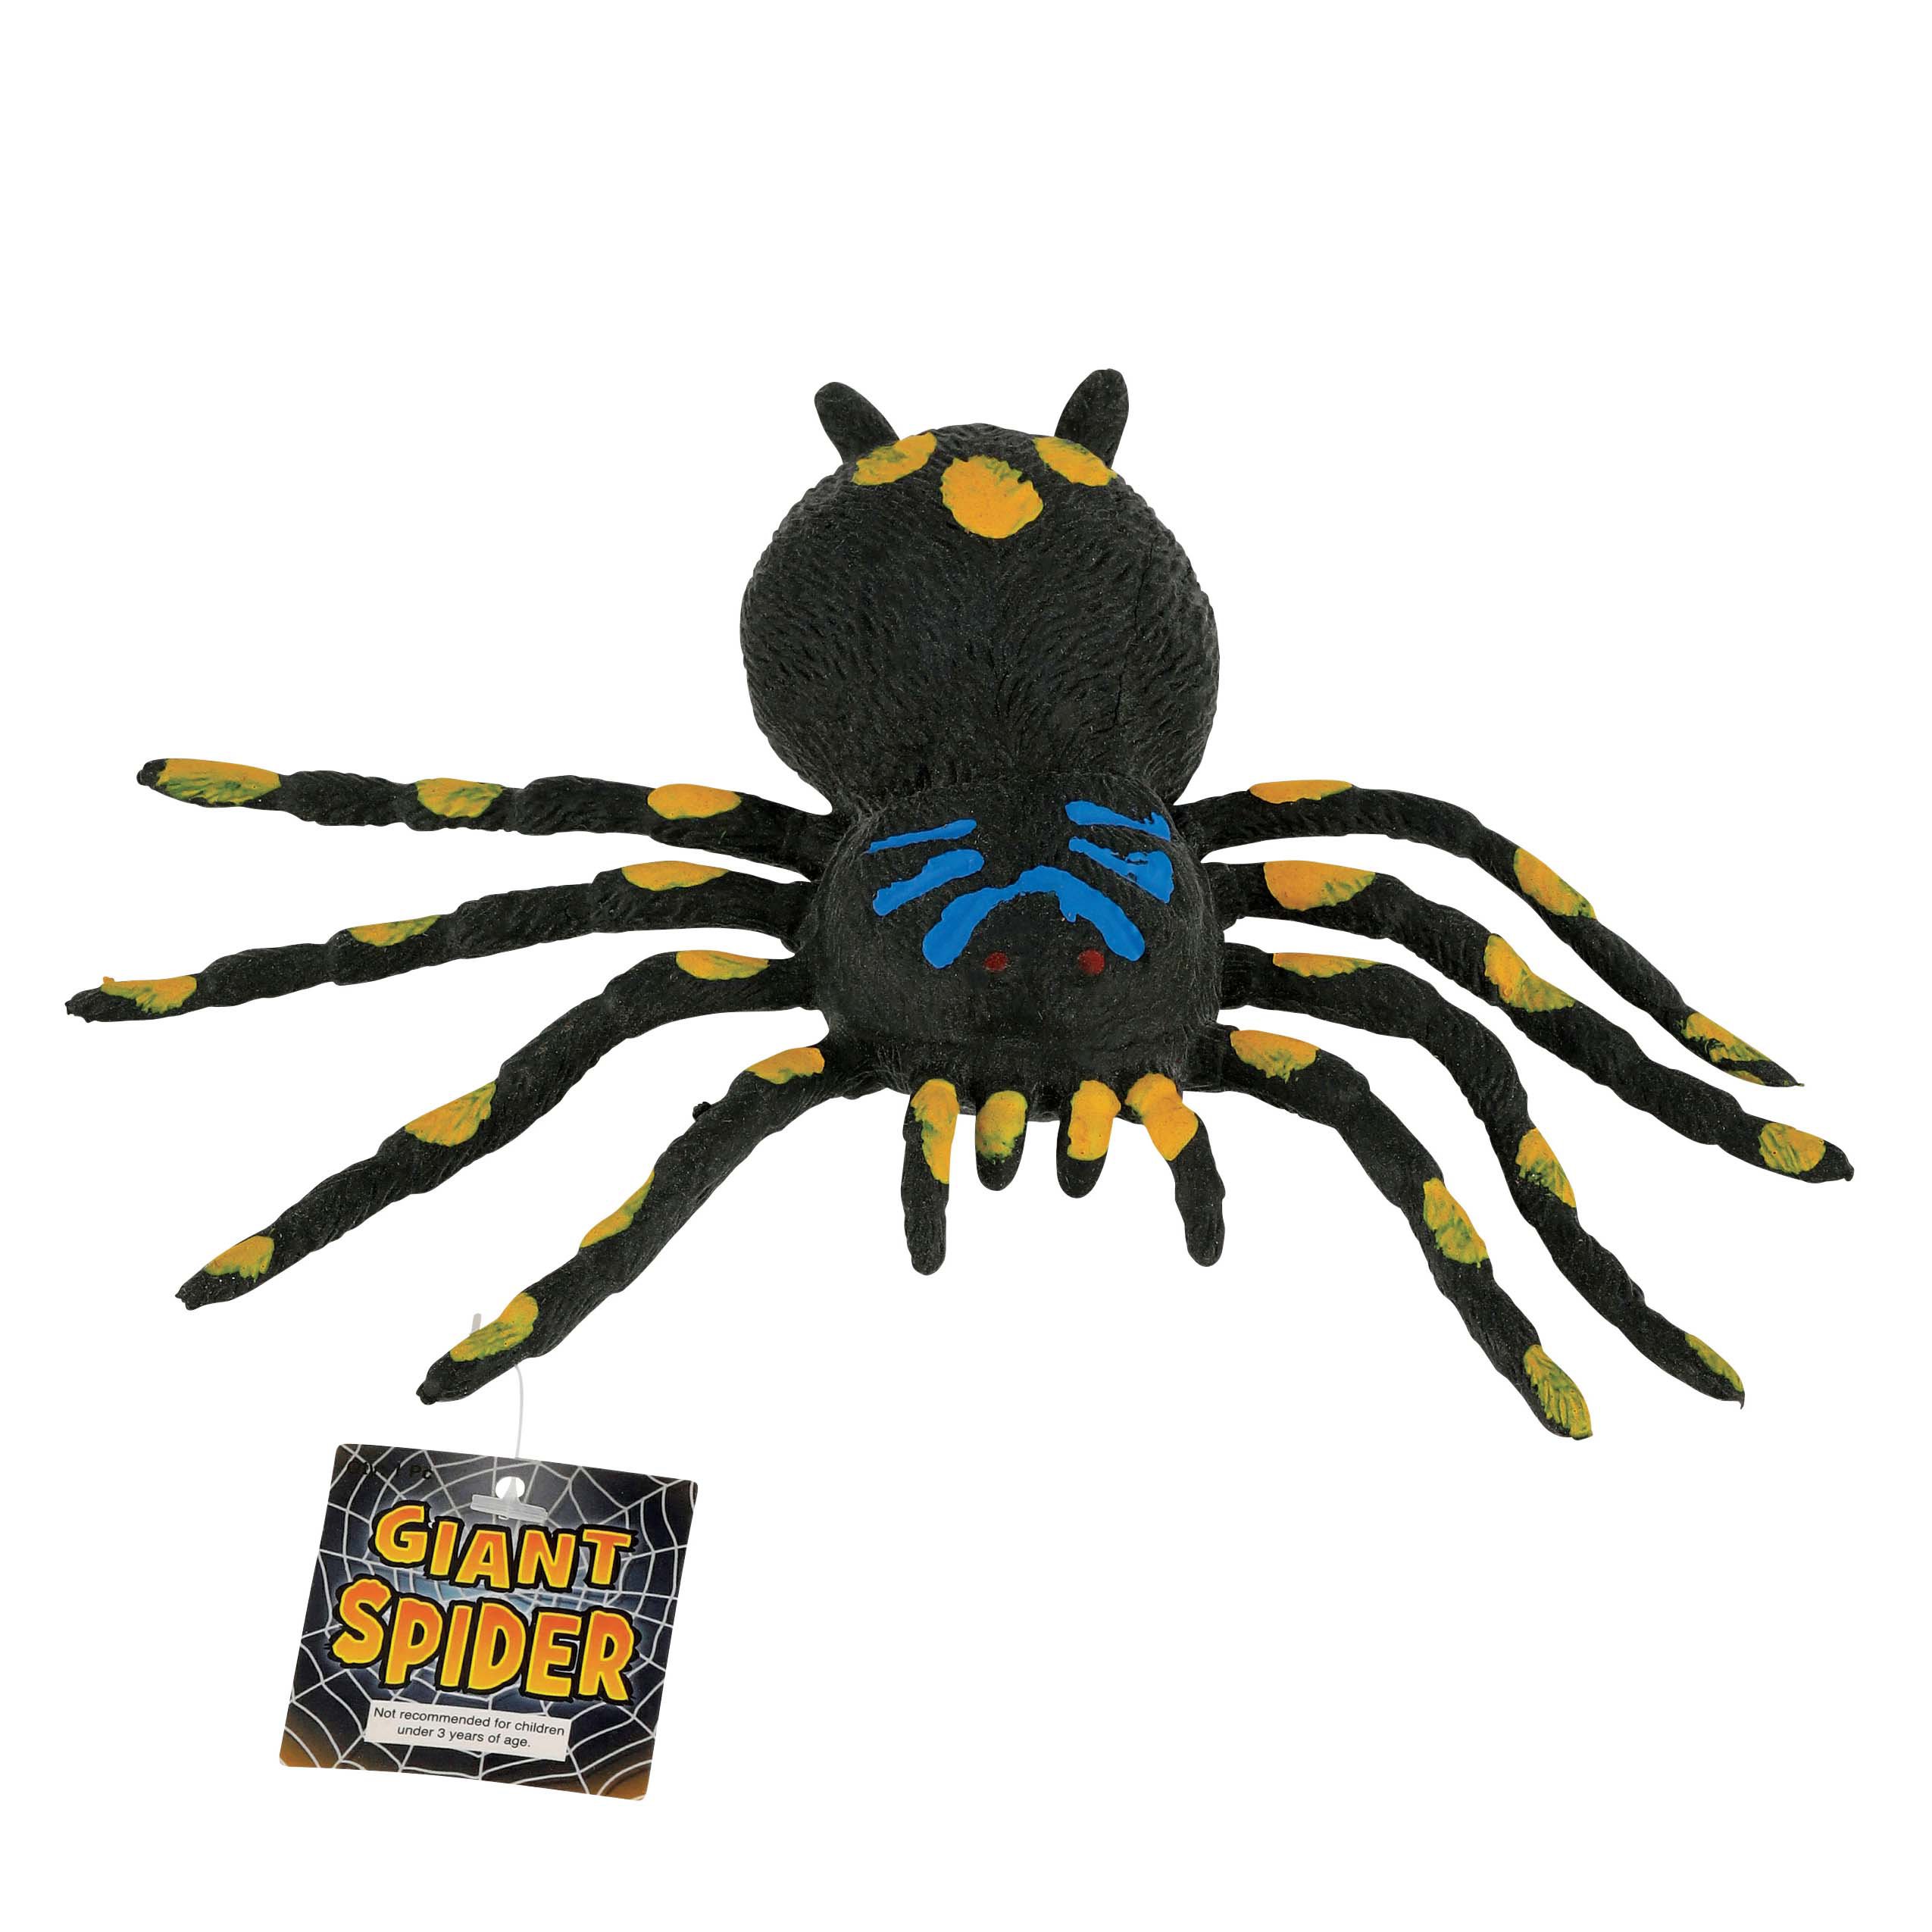 Aranha Gigante (Giant Spider) · Tenth Edition (10E) #267